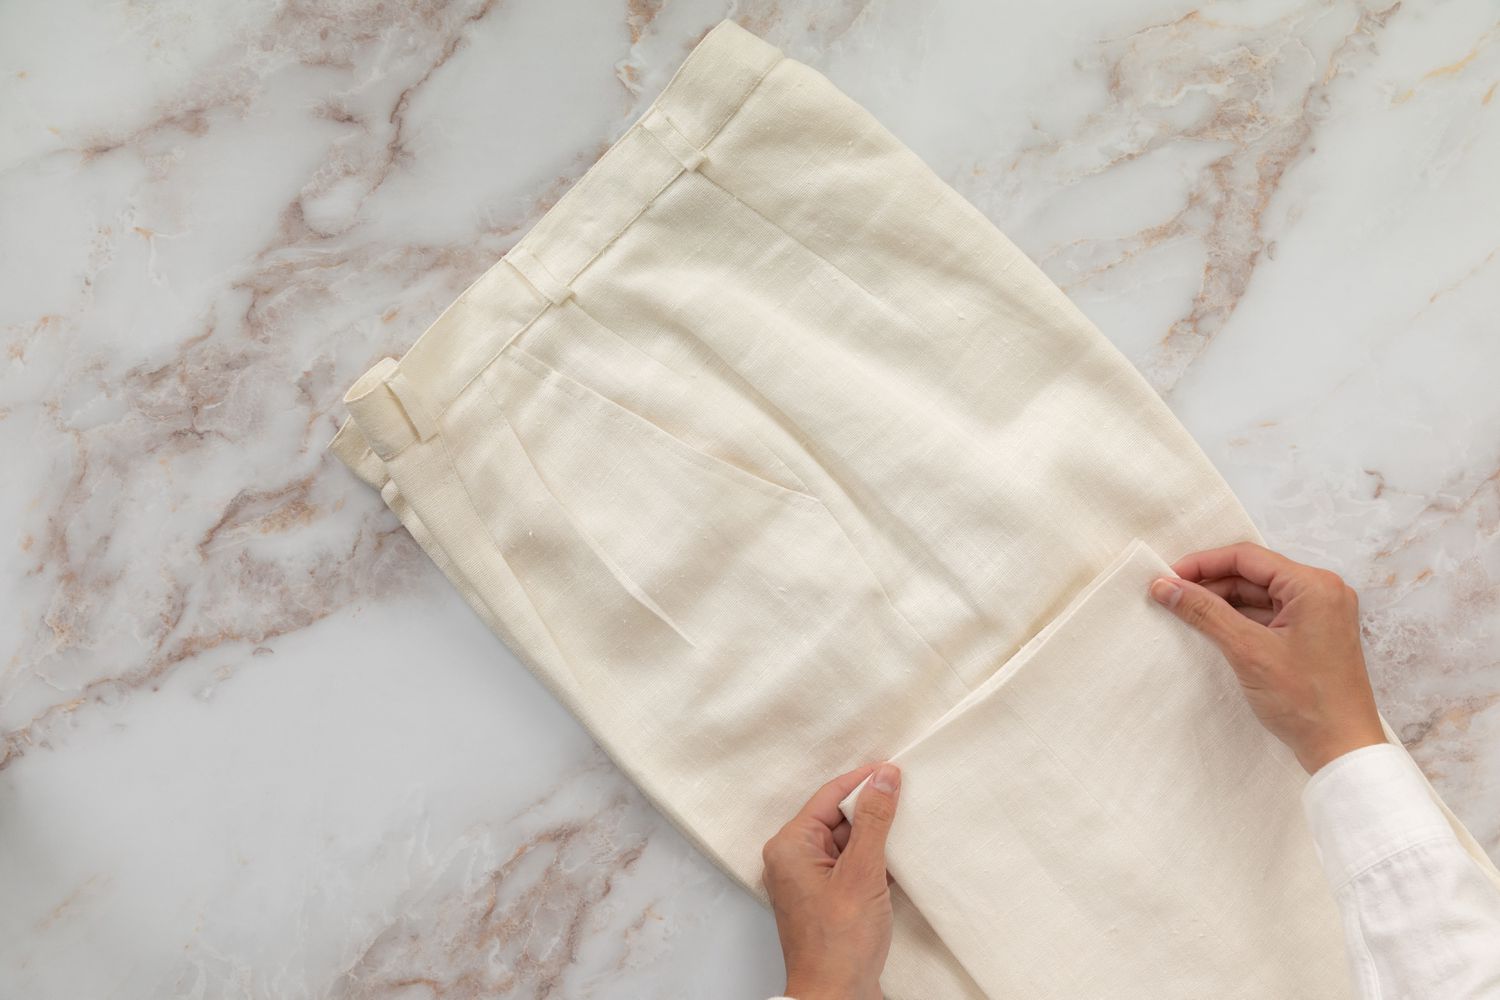 Pantalon couleur crème avec des plis pliés en deux avec le revers du pantalon plié vers le haut vers le pantalon de la jambe